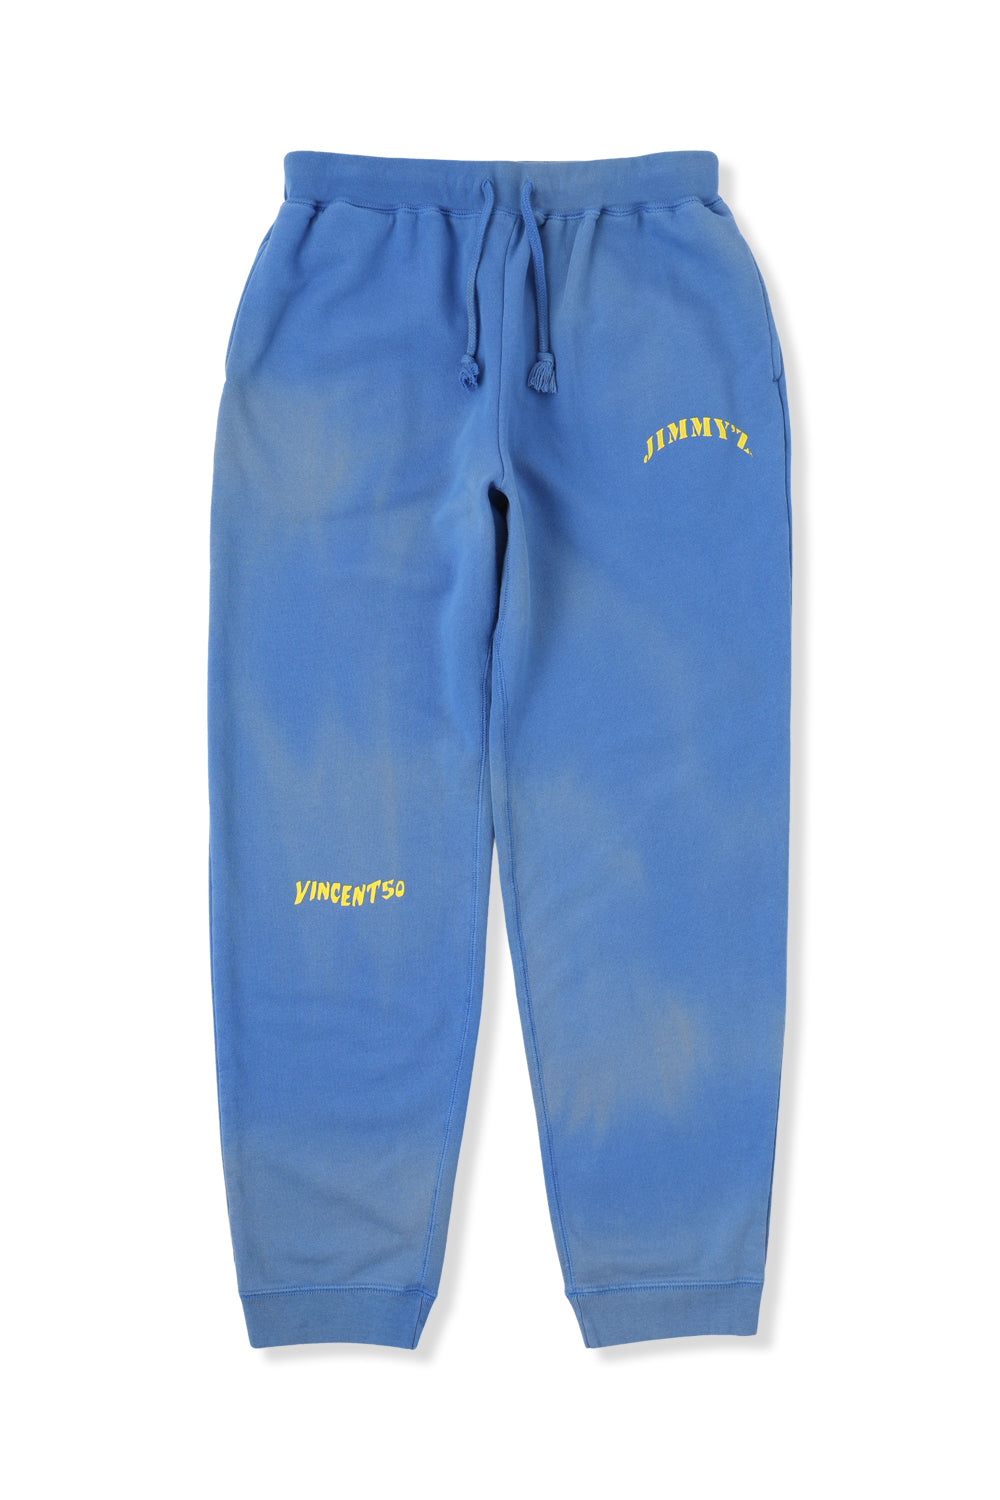 JIMMY'Z Back Print Pants Blue